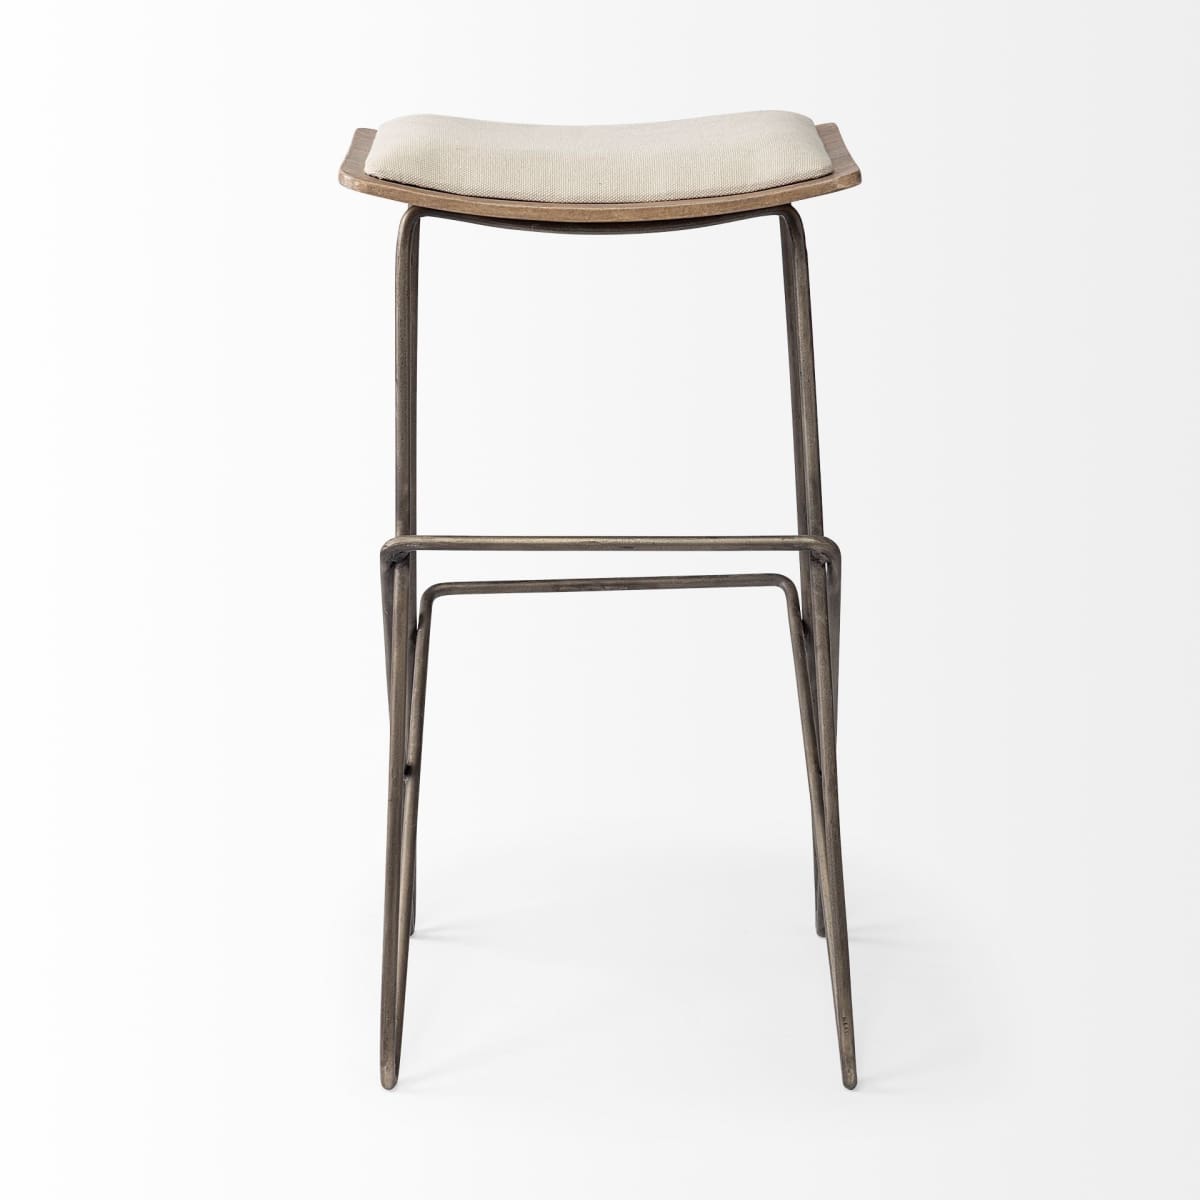 Katniss Bar Counter Stool Cream Fabric | Gold Metal | Bar - bar-stools